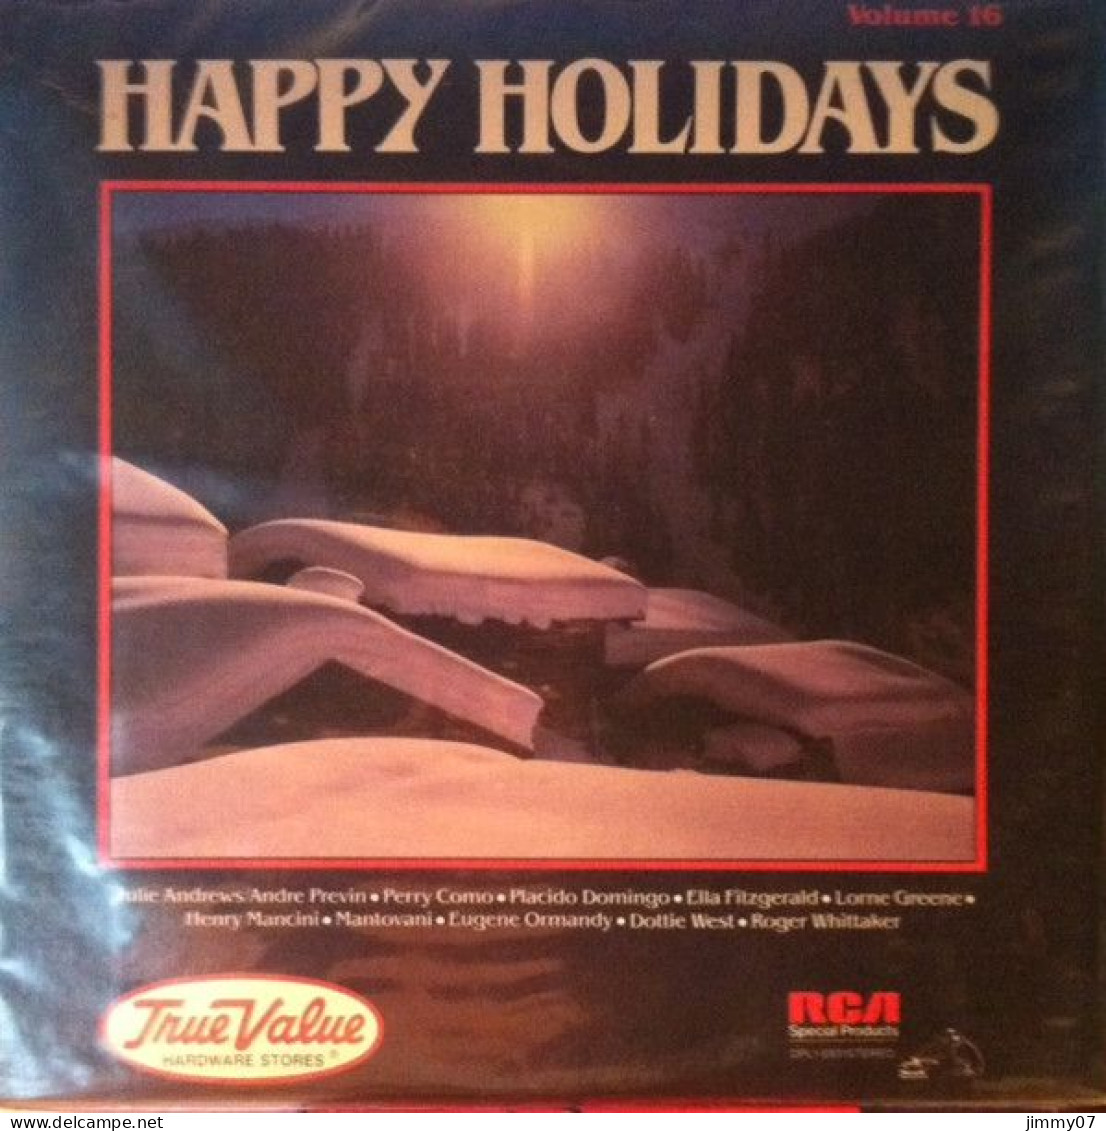 Various - True Value Hardware Stores - Happy Holidays - Volume 16 (LP, Album, Comp) - Disco & Pop